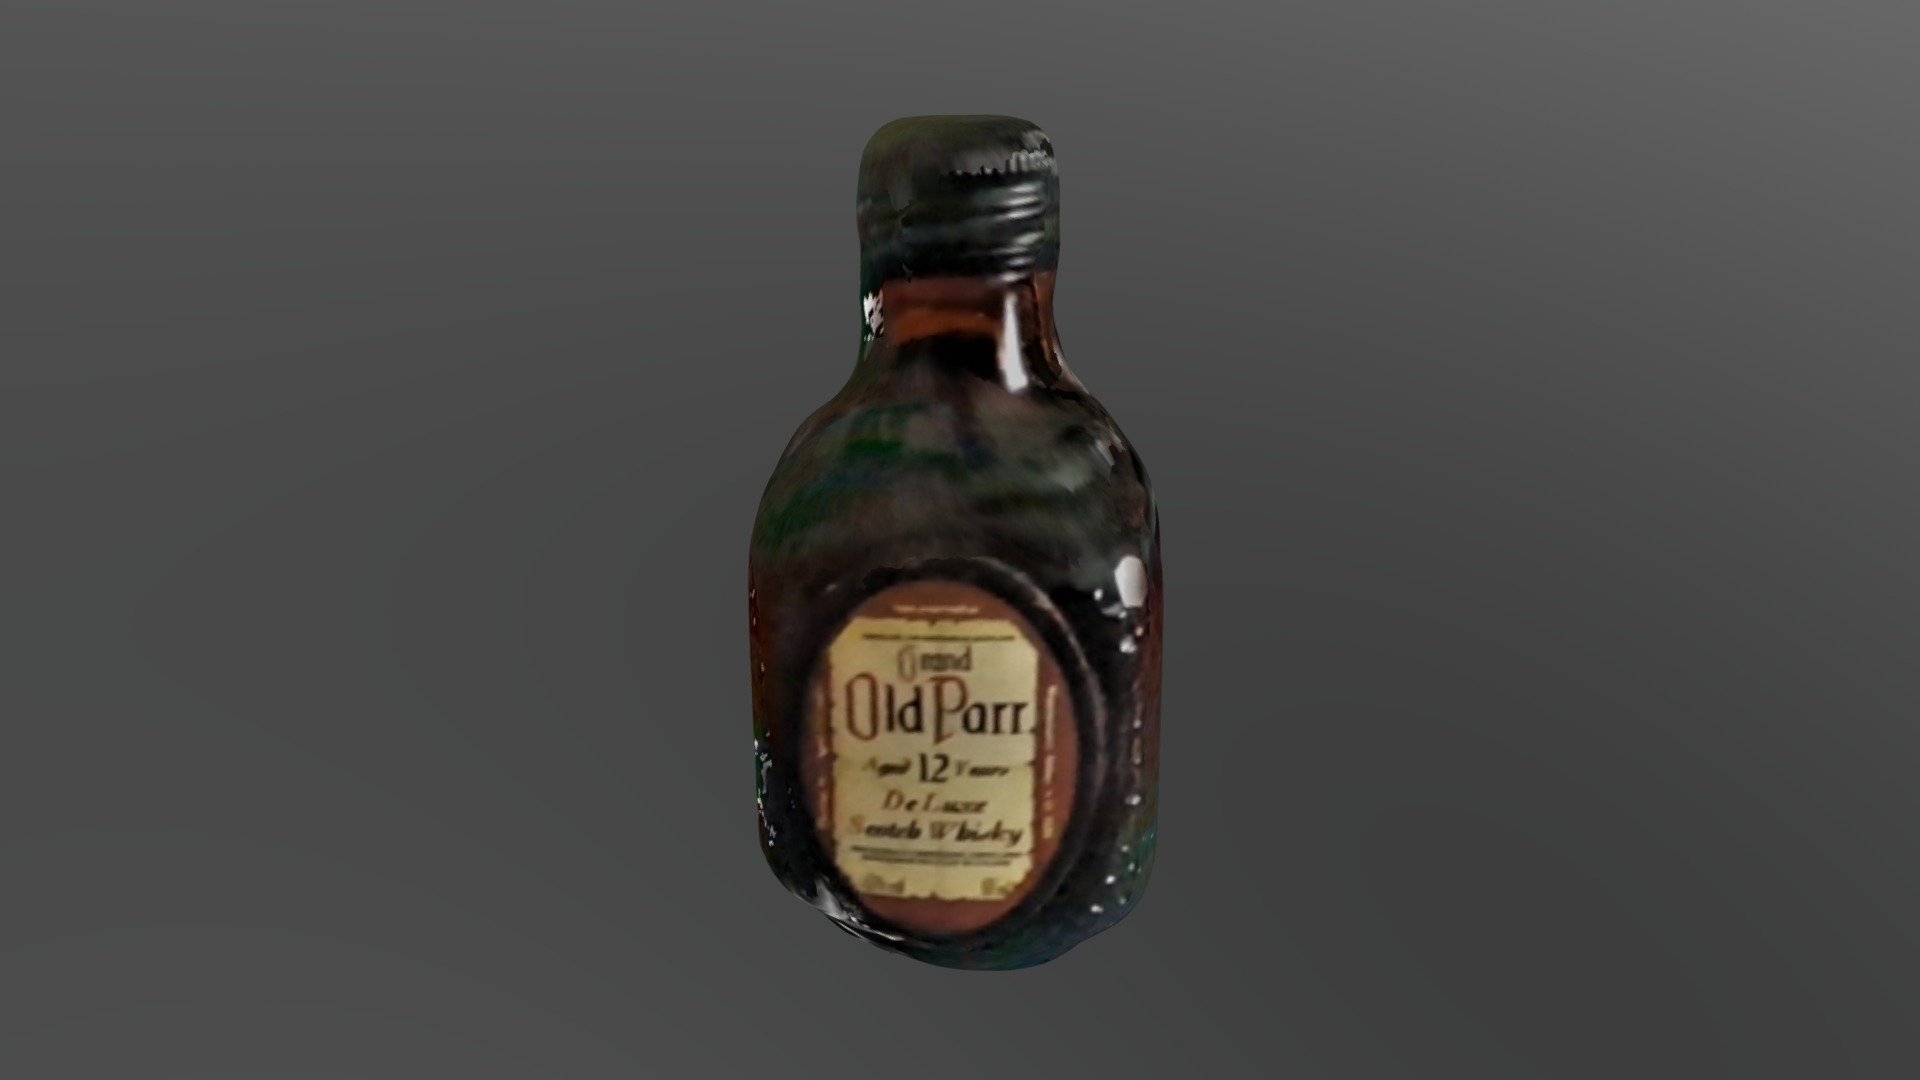 Mini Old Parr bottle